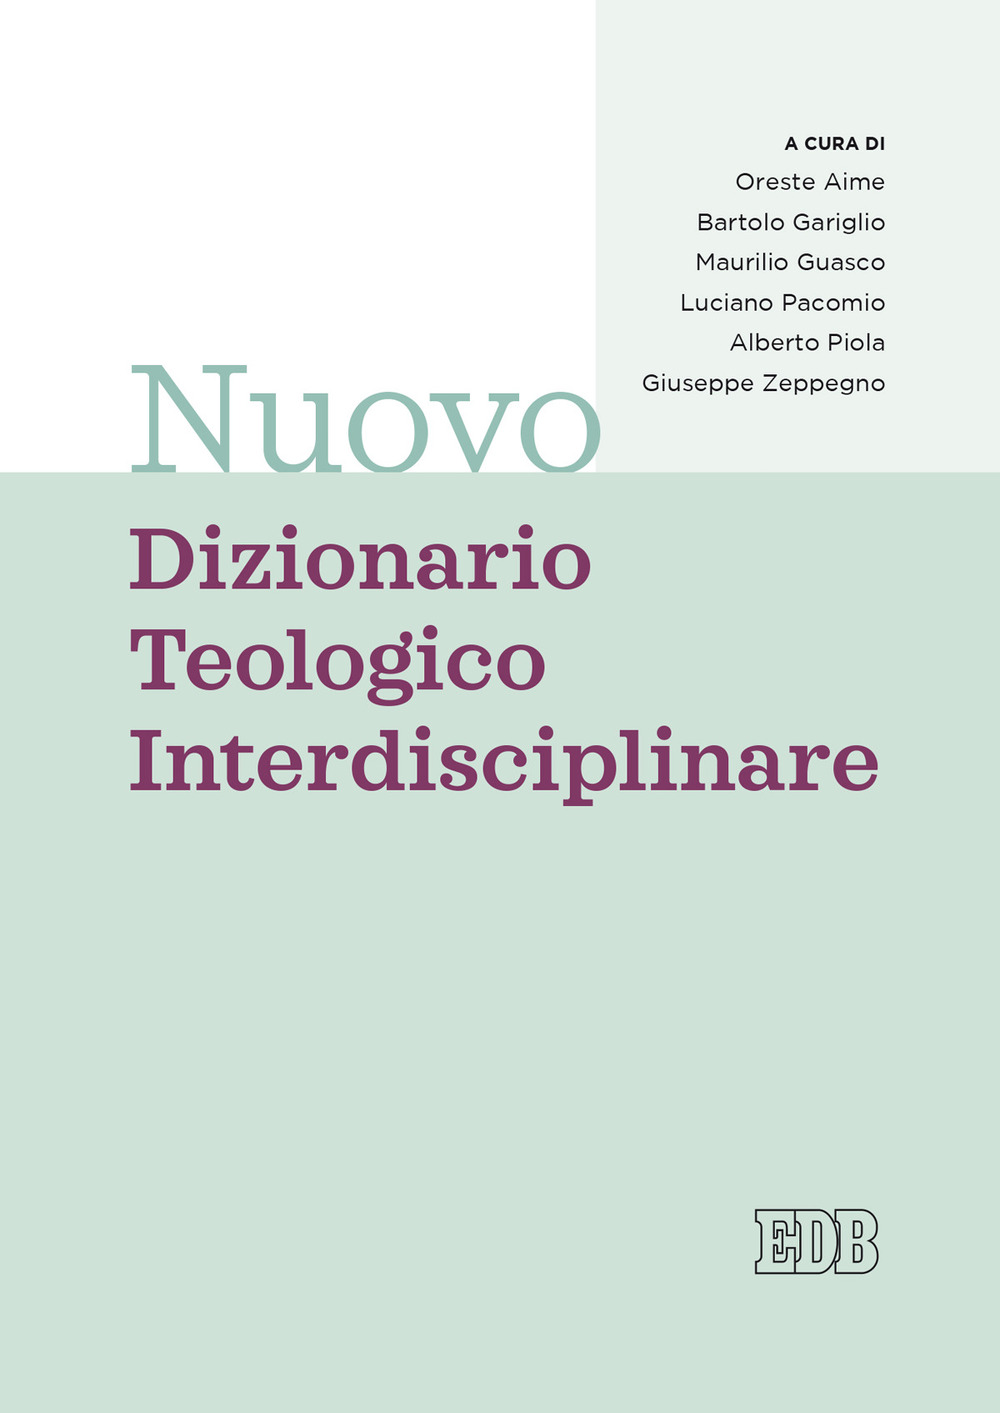 NUOVO DIZIONARIO TEOLOGICO INTERDISCIPLINARE - Aime Carlo - 9788810231166